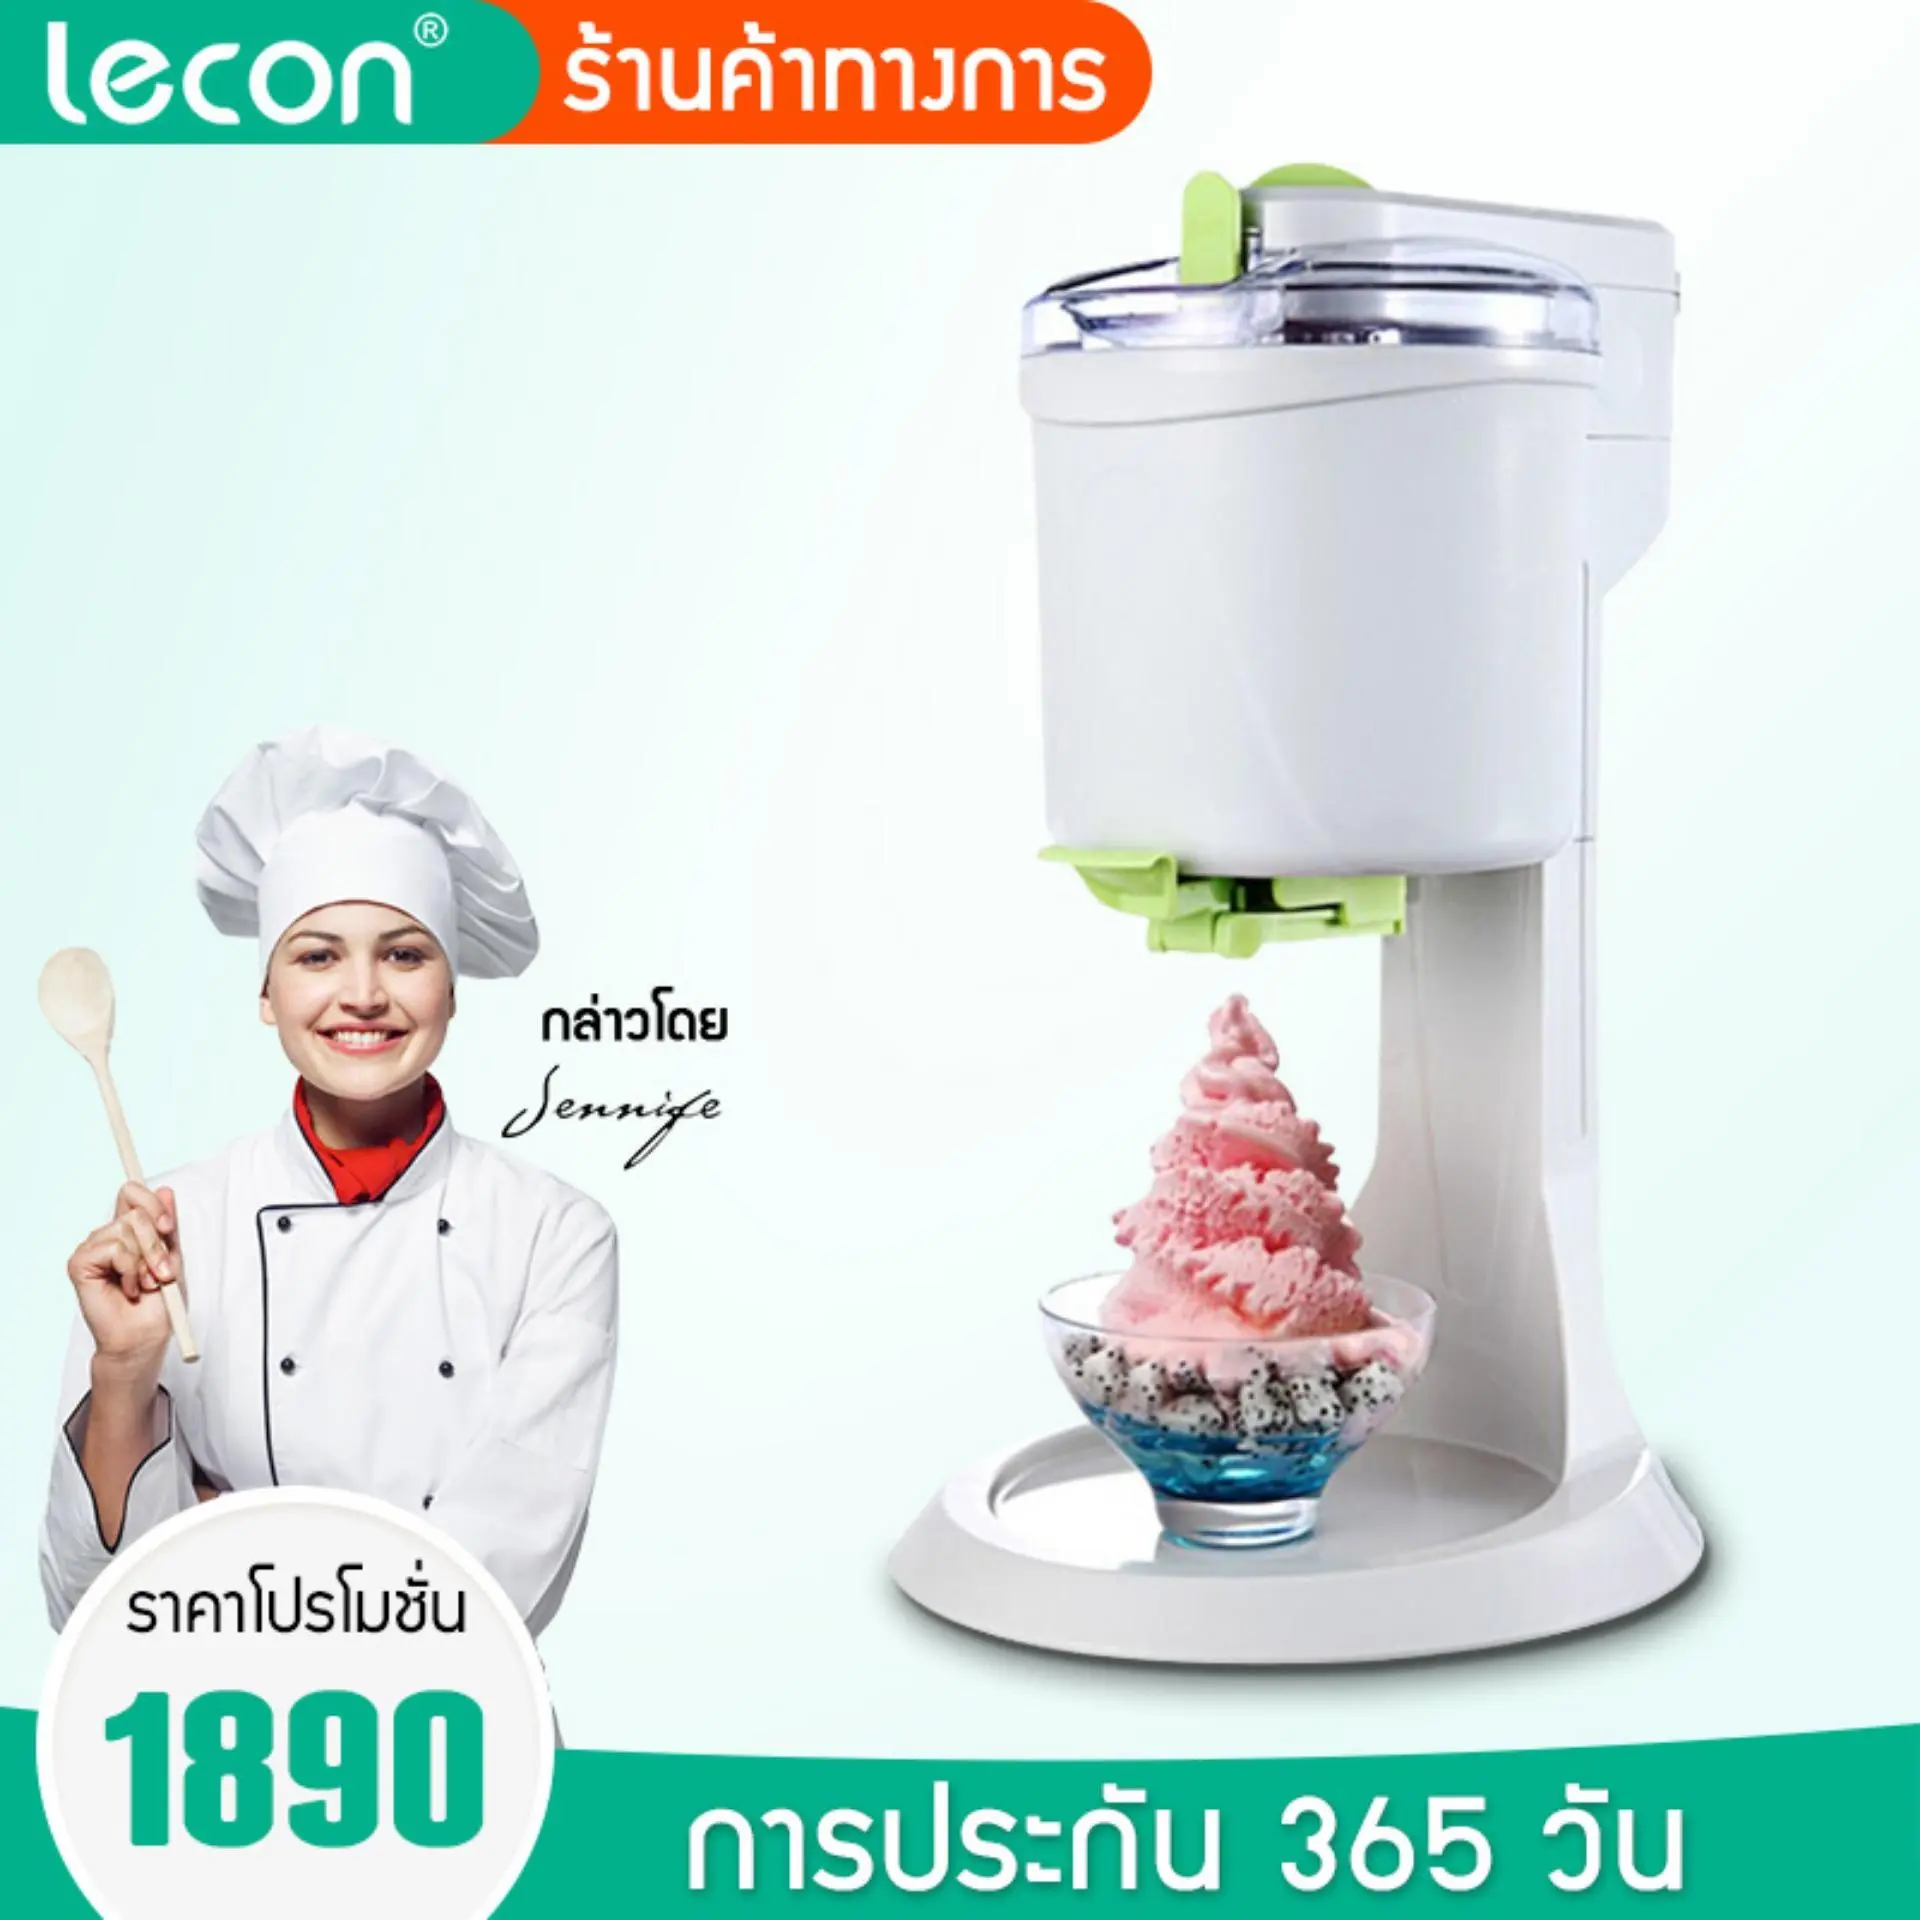 Lecon เครื่องทำไอติม  เครื่องทำไอศกรีม เครื่องทำซอฟครีม ไอติม ไอศครีมโฮมเมดเครื่องทำไอศครีมสด เครื่องทำไอศครีม ไอศกรีม ไอศครีม ของหวานหน้าร้อน EP02